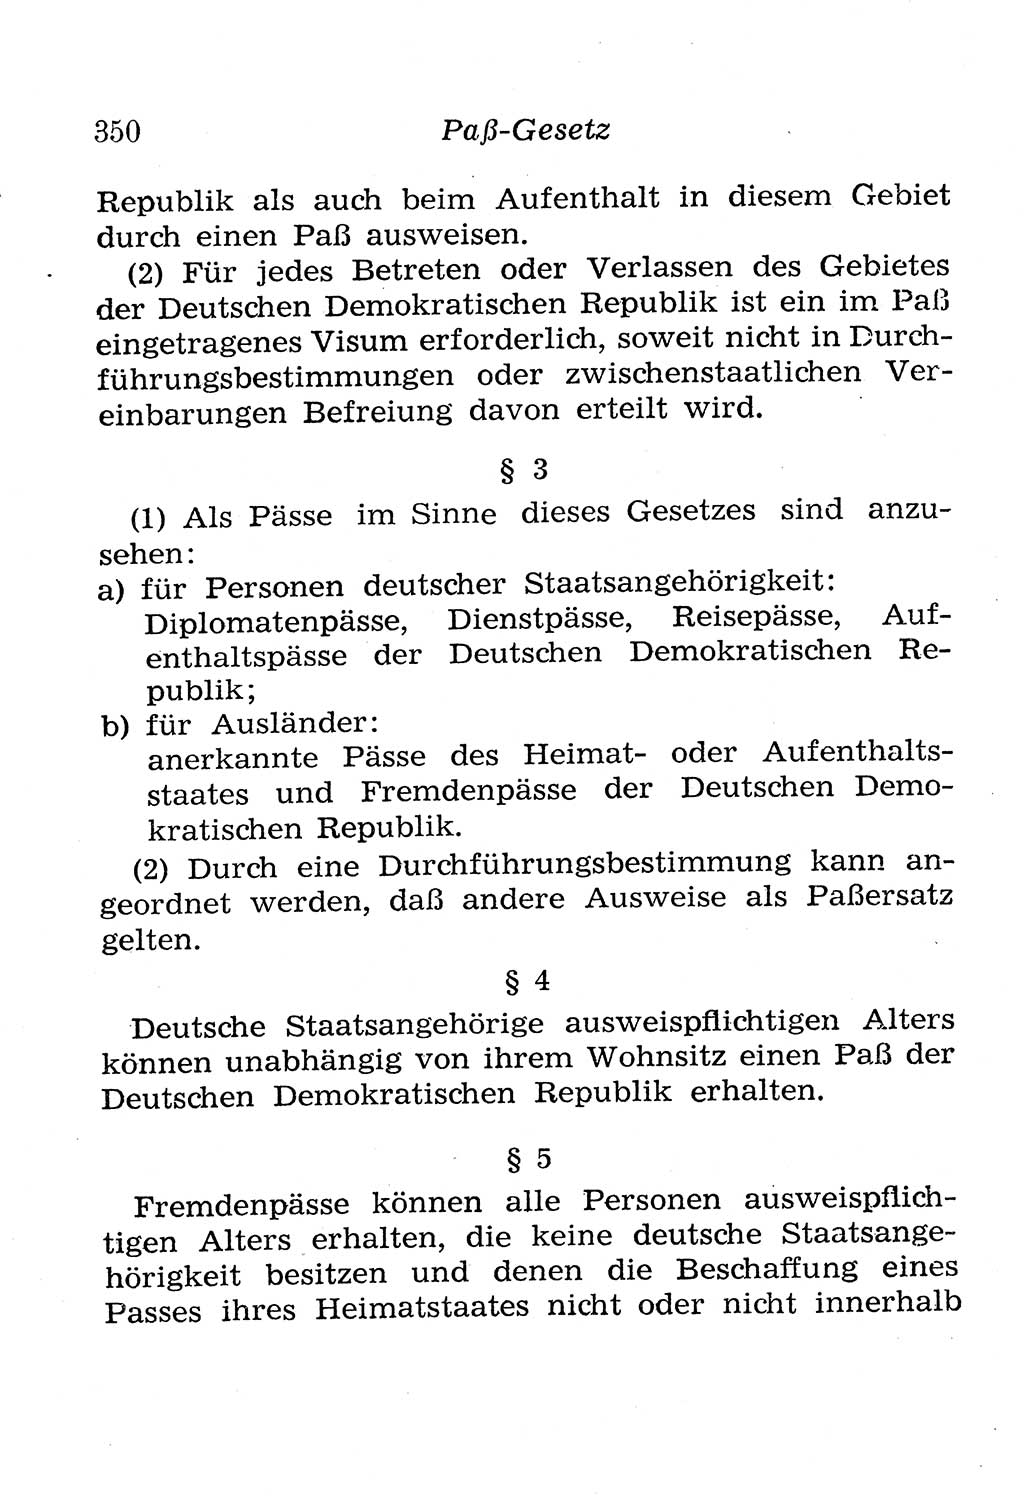 Strafgesetzbuch (StGB) und andere Strafgesetze [Deutsche Demokratische Republik (DDR)] 1958, Seite 350 (StGB Strafges. DDR 1958, S. 350)